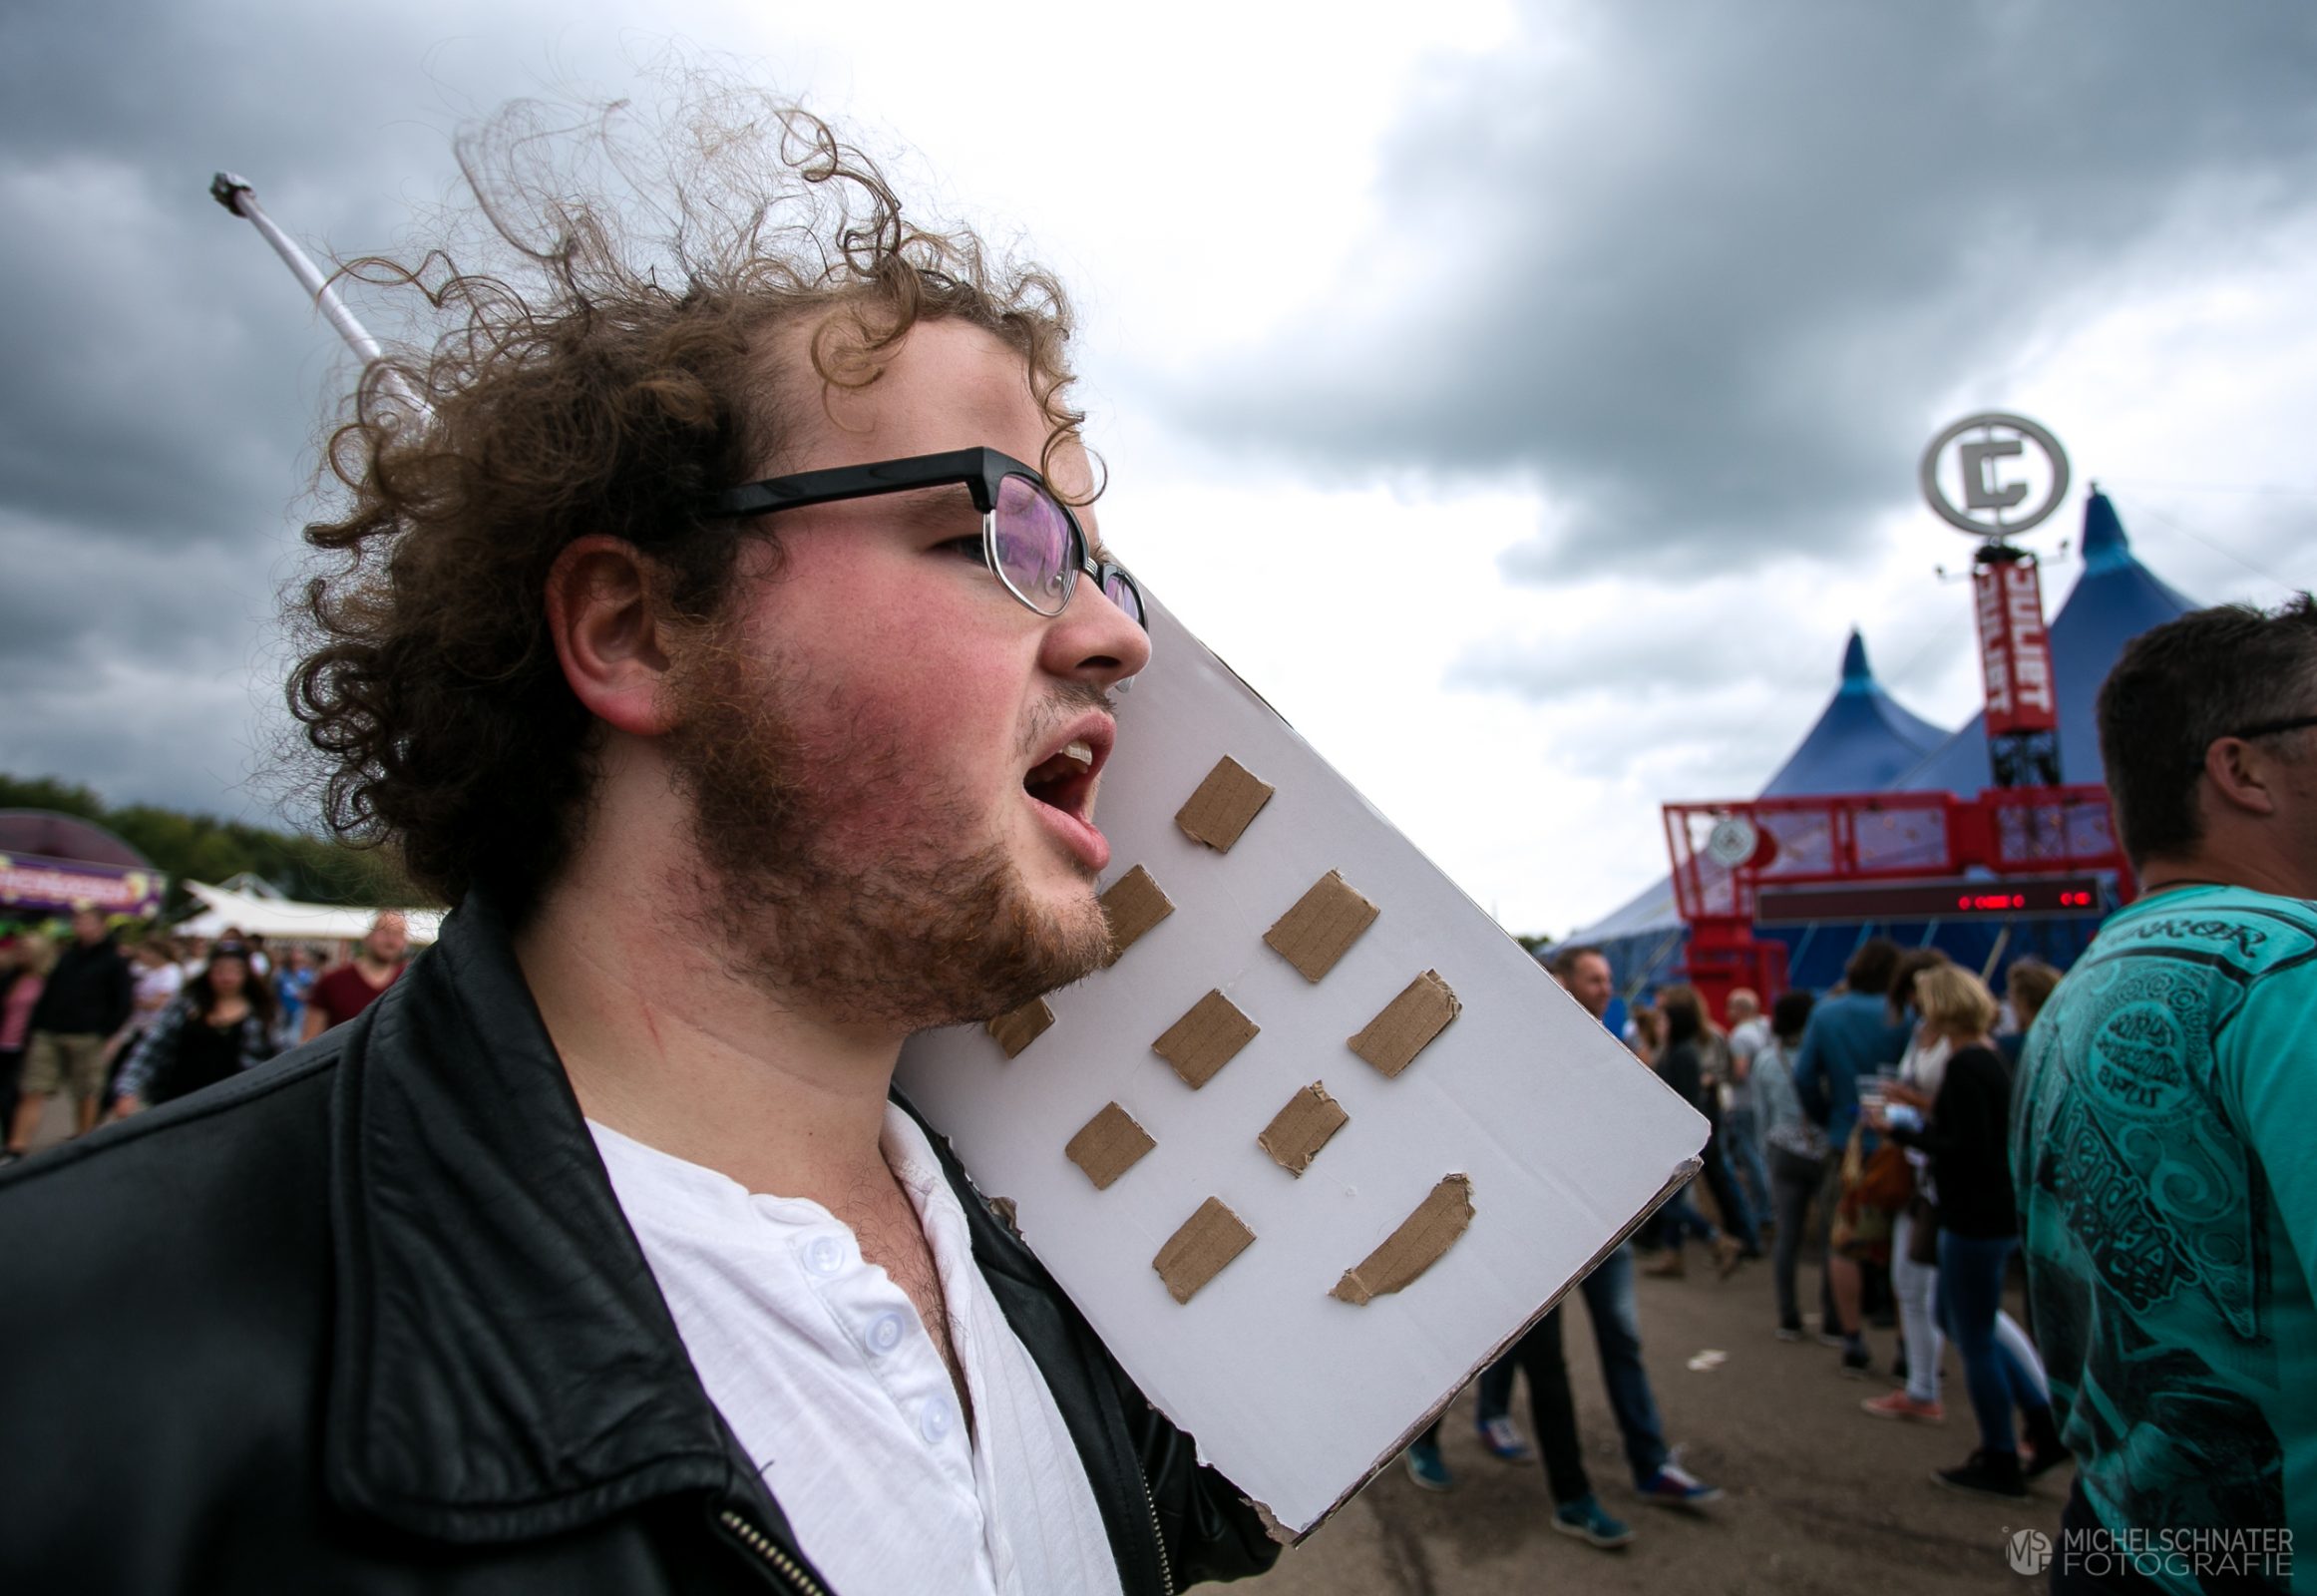 Jonge man loopt op Lowlands festival met kartonnen grote telefoon die hij zelf heeft gemaakt foto gemaakt door Michel Schnater